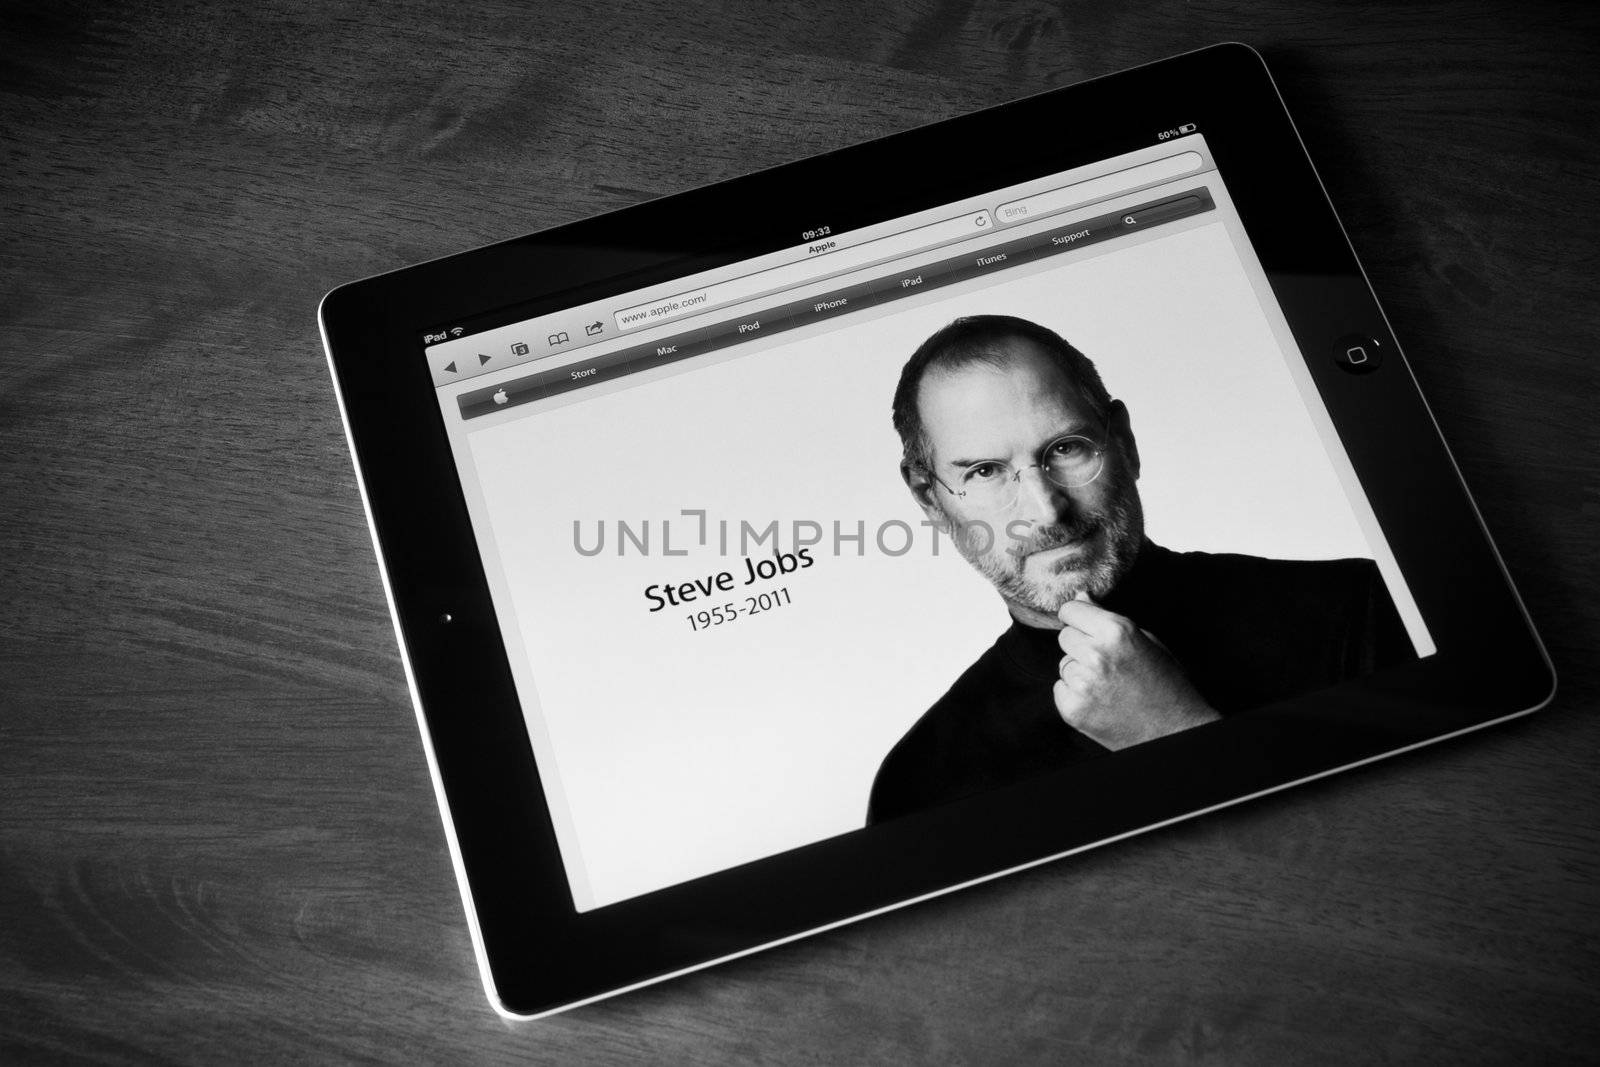 RIP Steve Jobs by bloomua